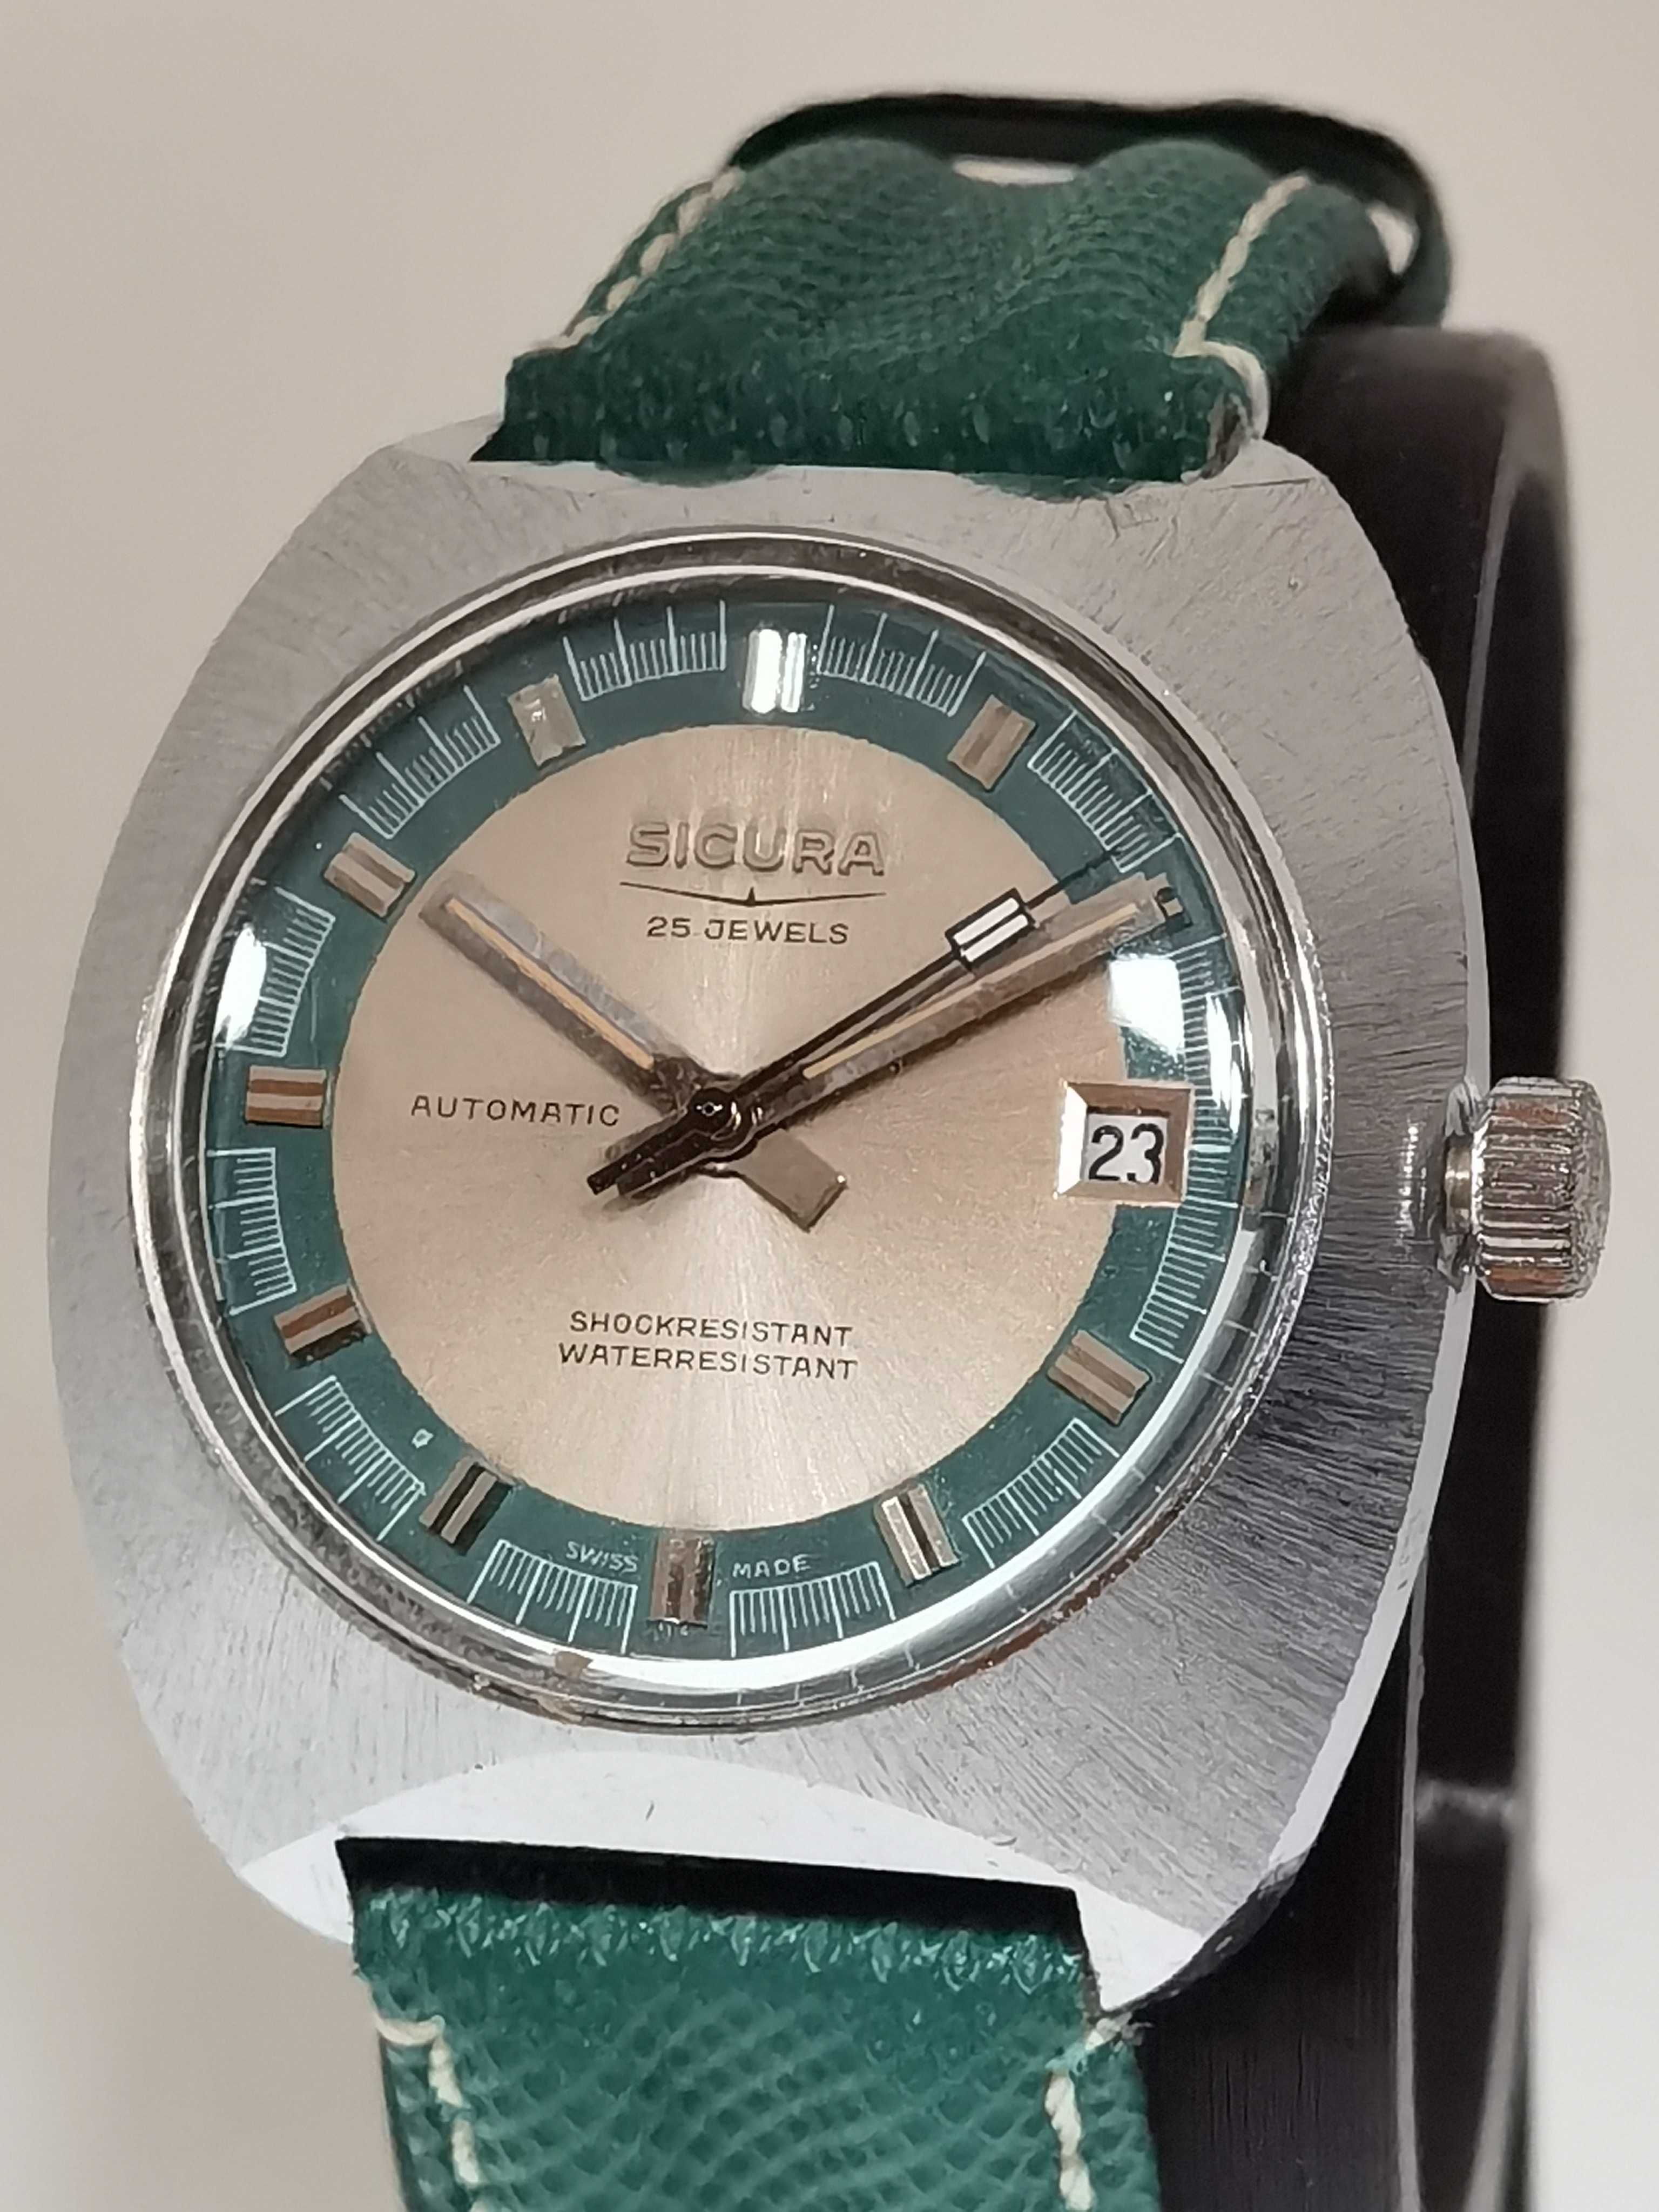 Relógio marca Sicura - Pré-Breitling